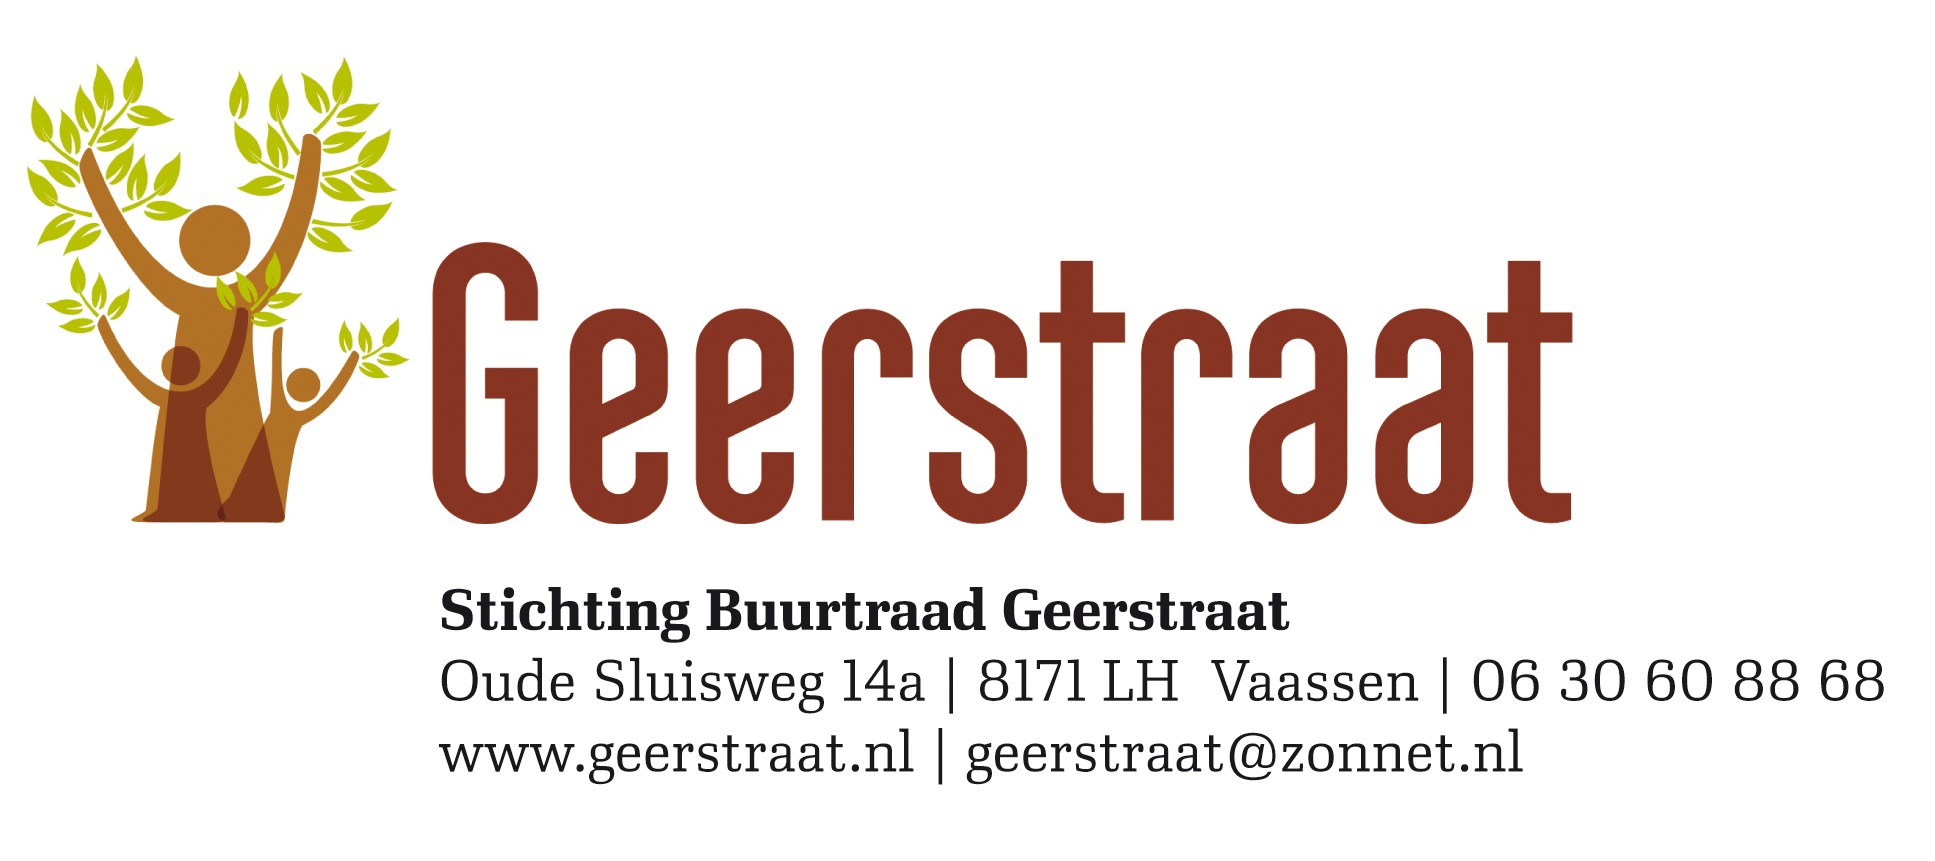 Buurtraad Geerstraat organiseert een “Kerst” workshop